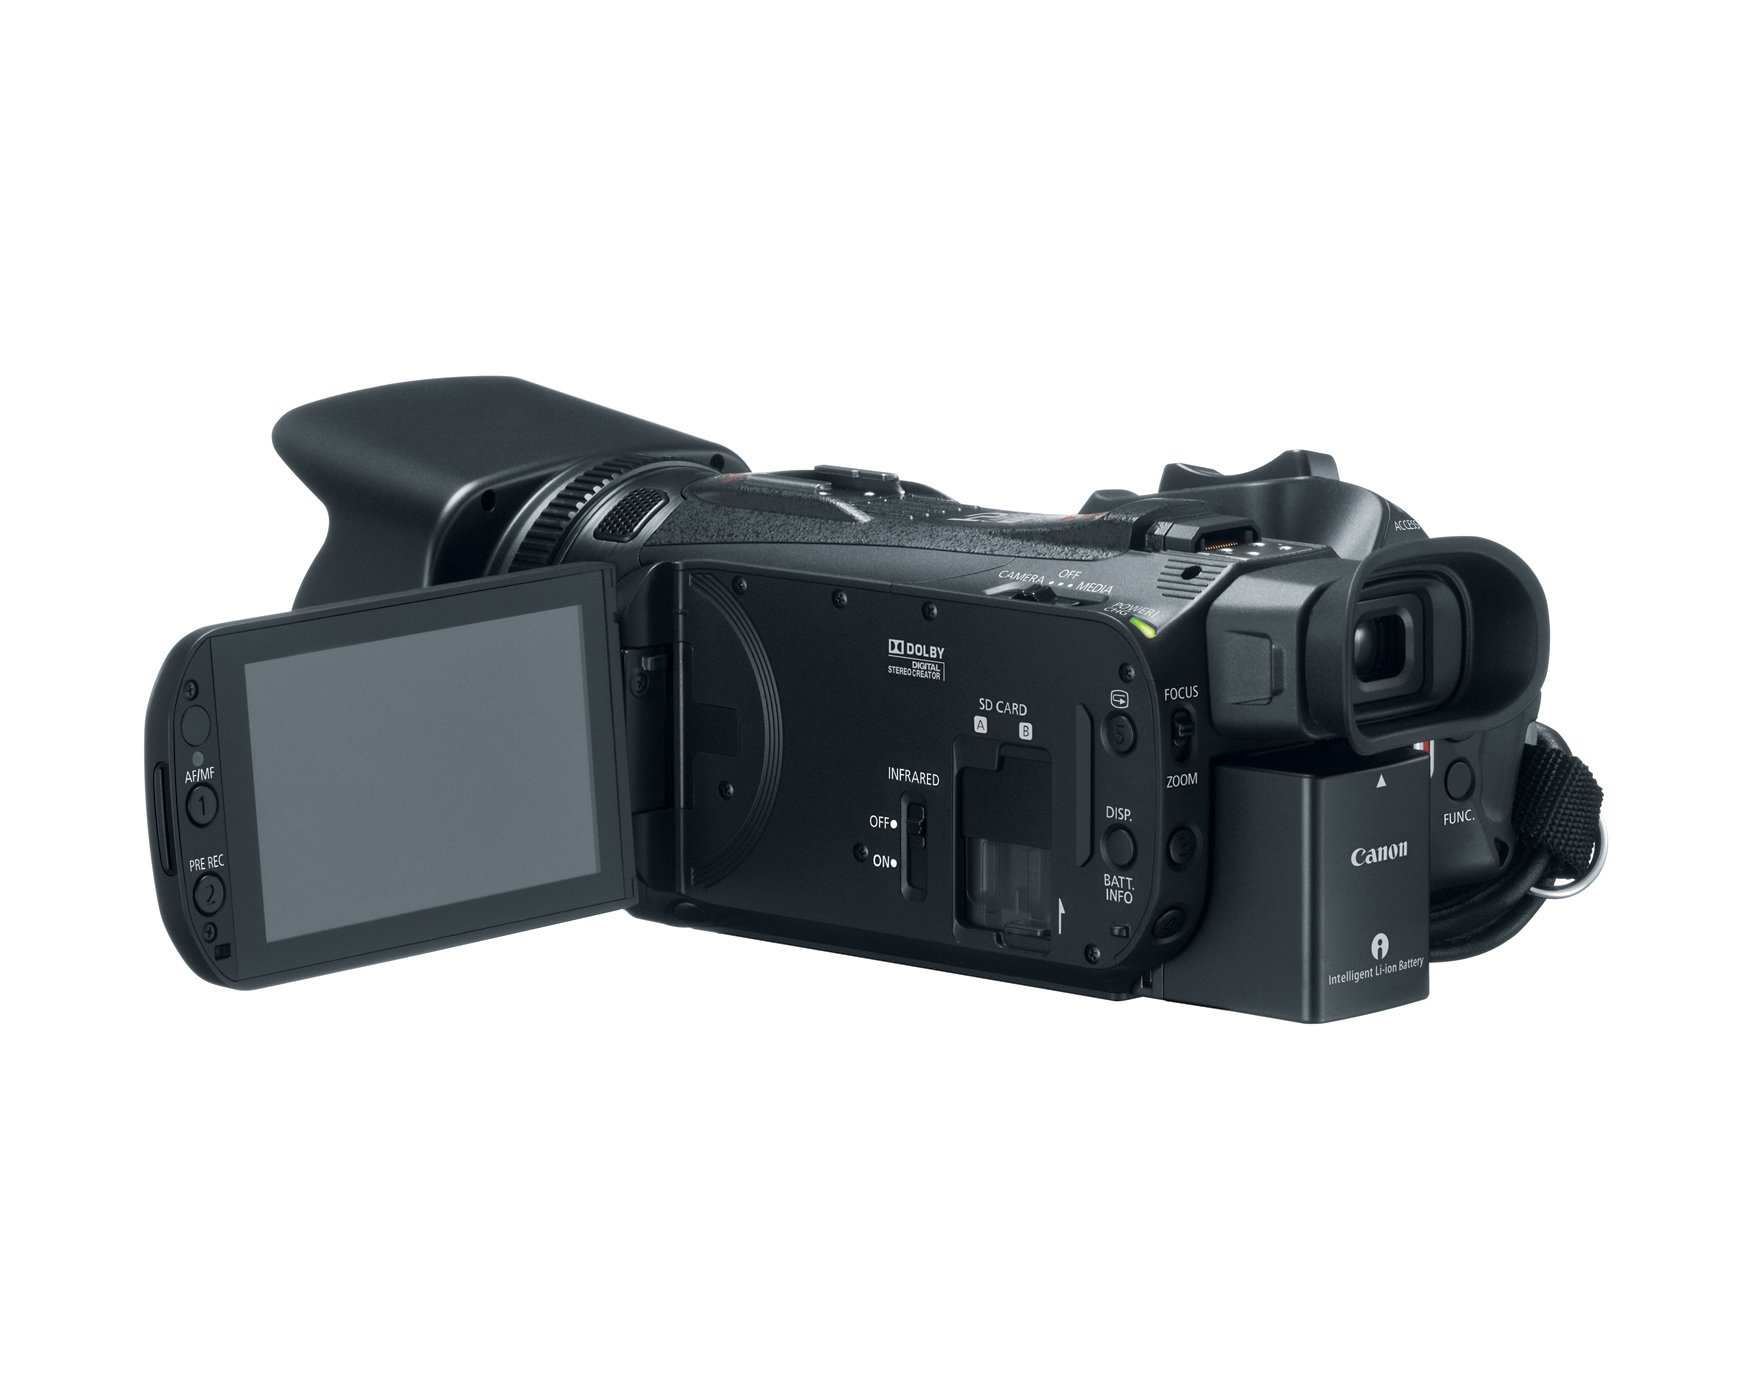 Canon XA25 Professional Camcorder